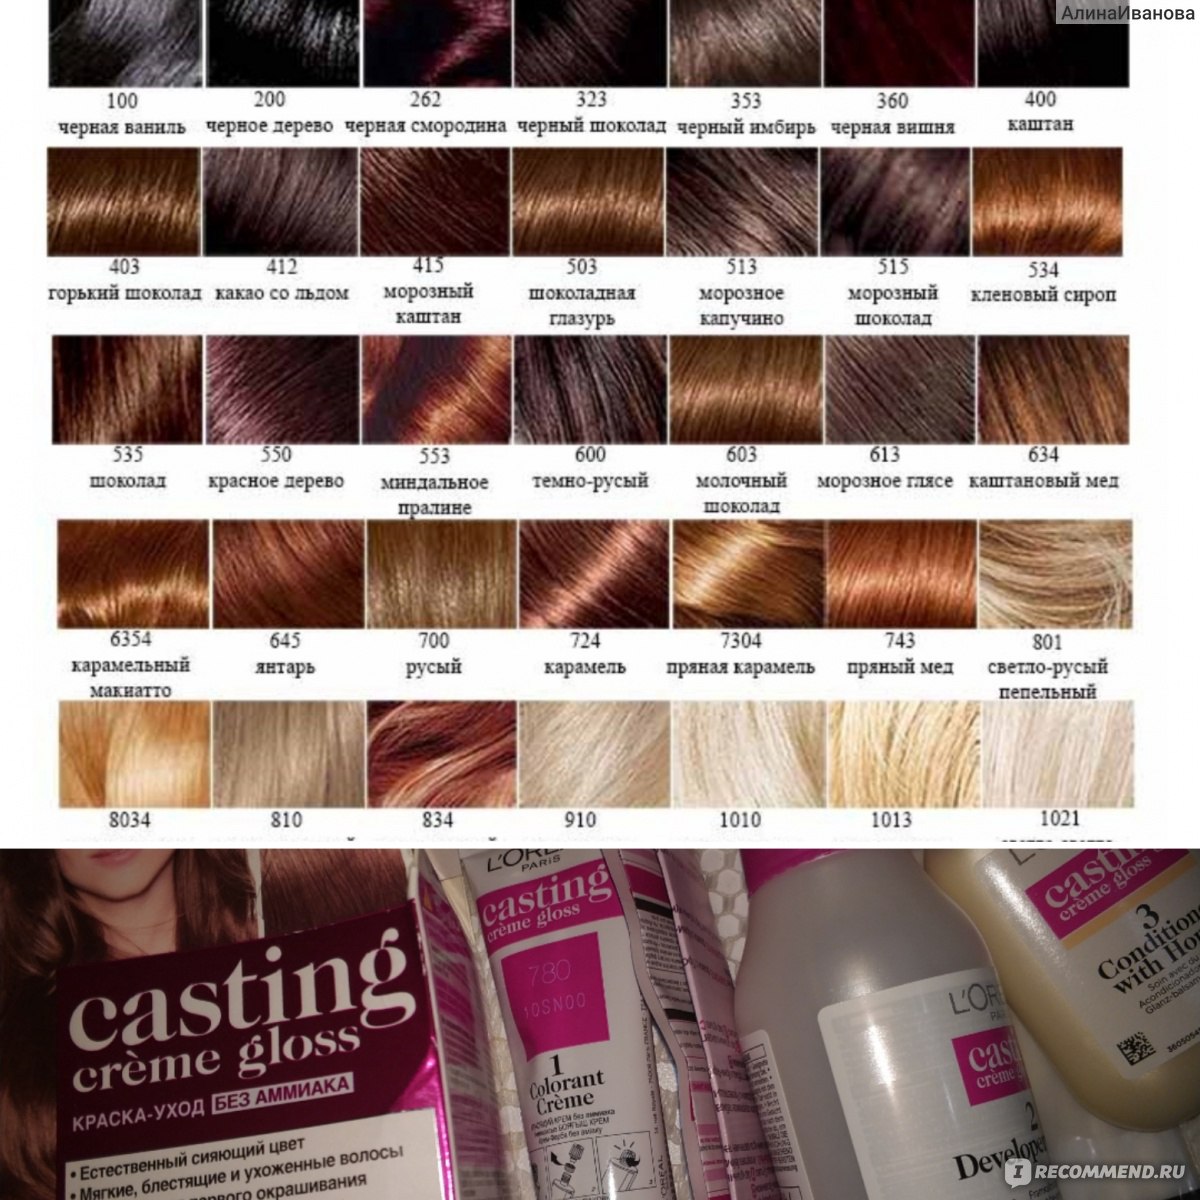 Рейтинг красок для волос лореаль